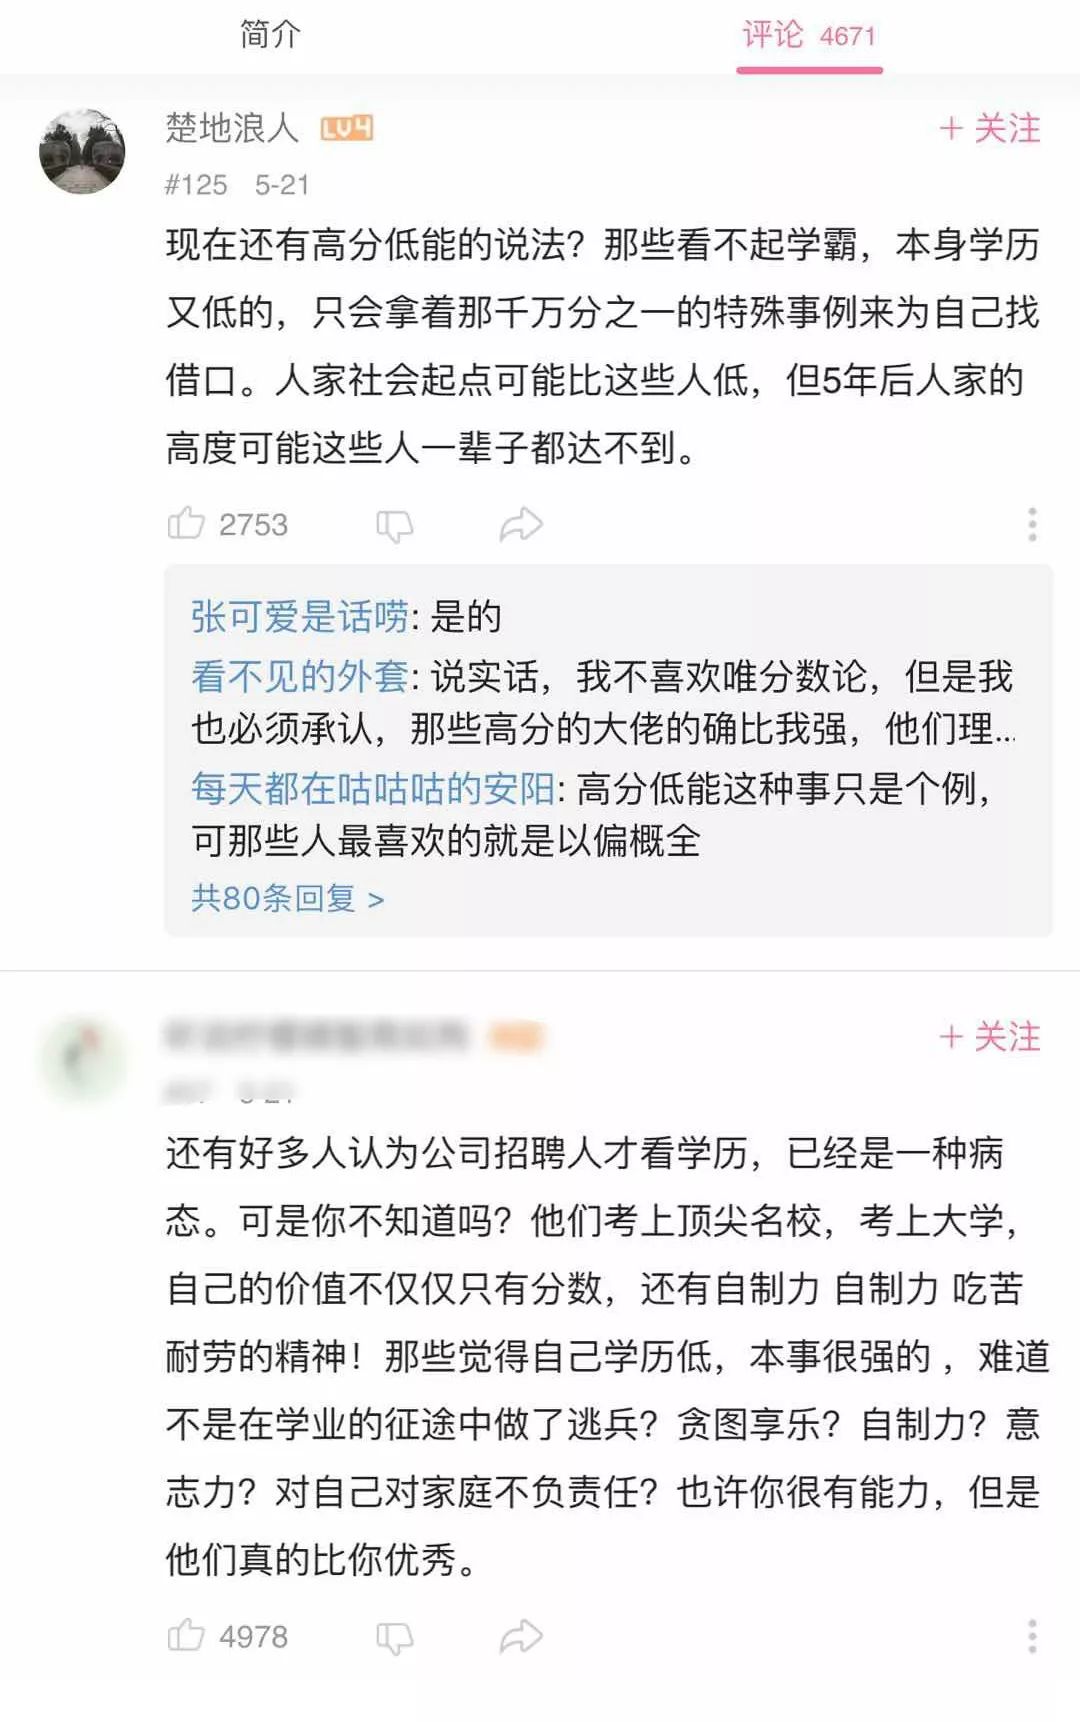 衡水中学学生励志演讲火爆全网_张锡锋